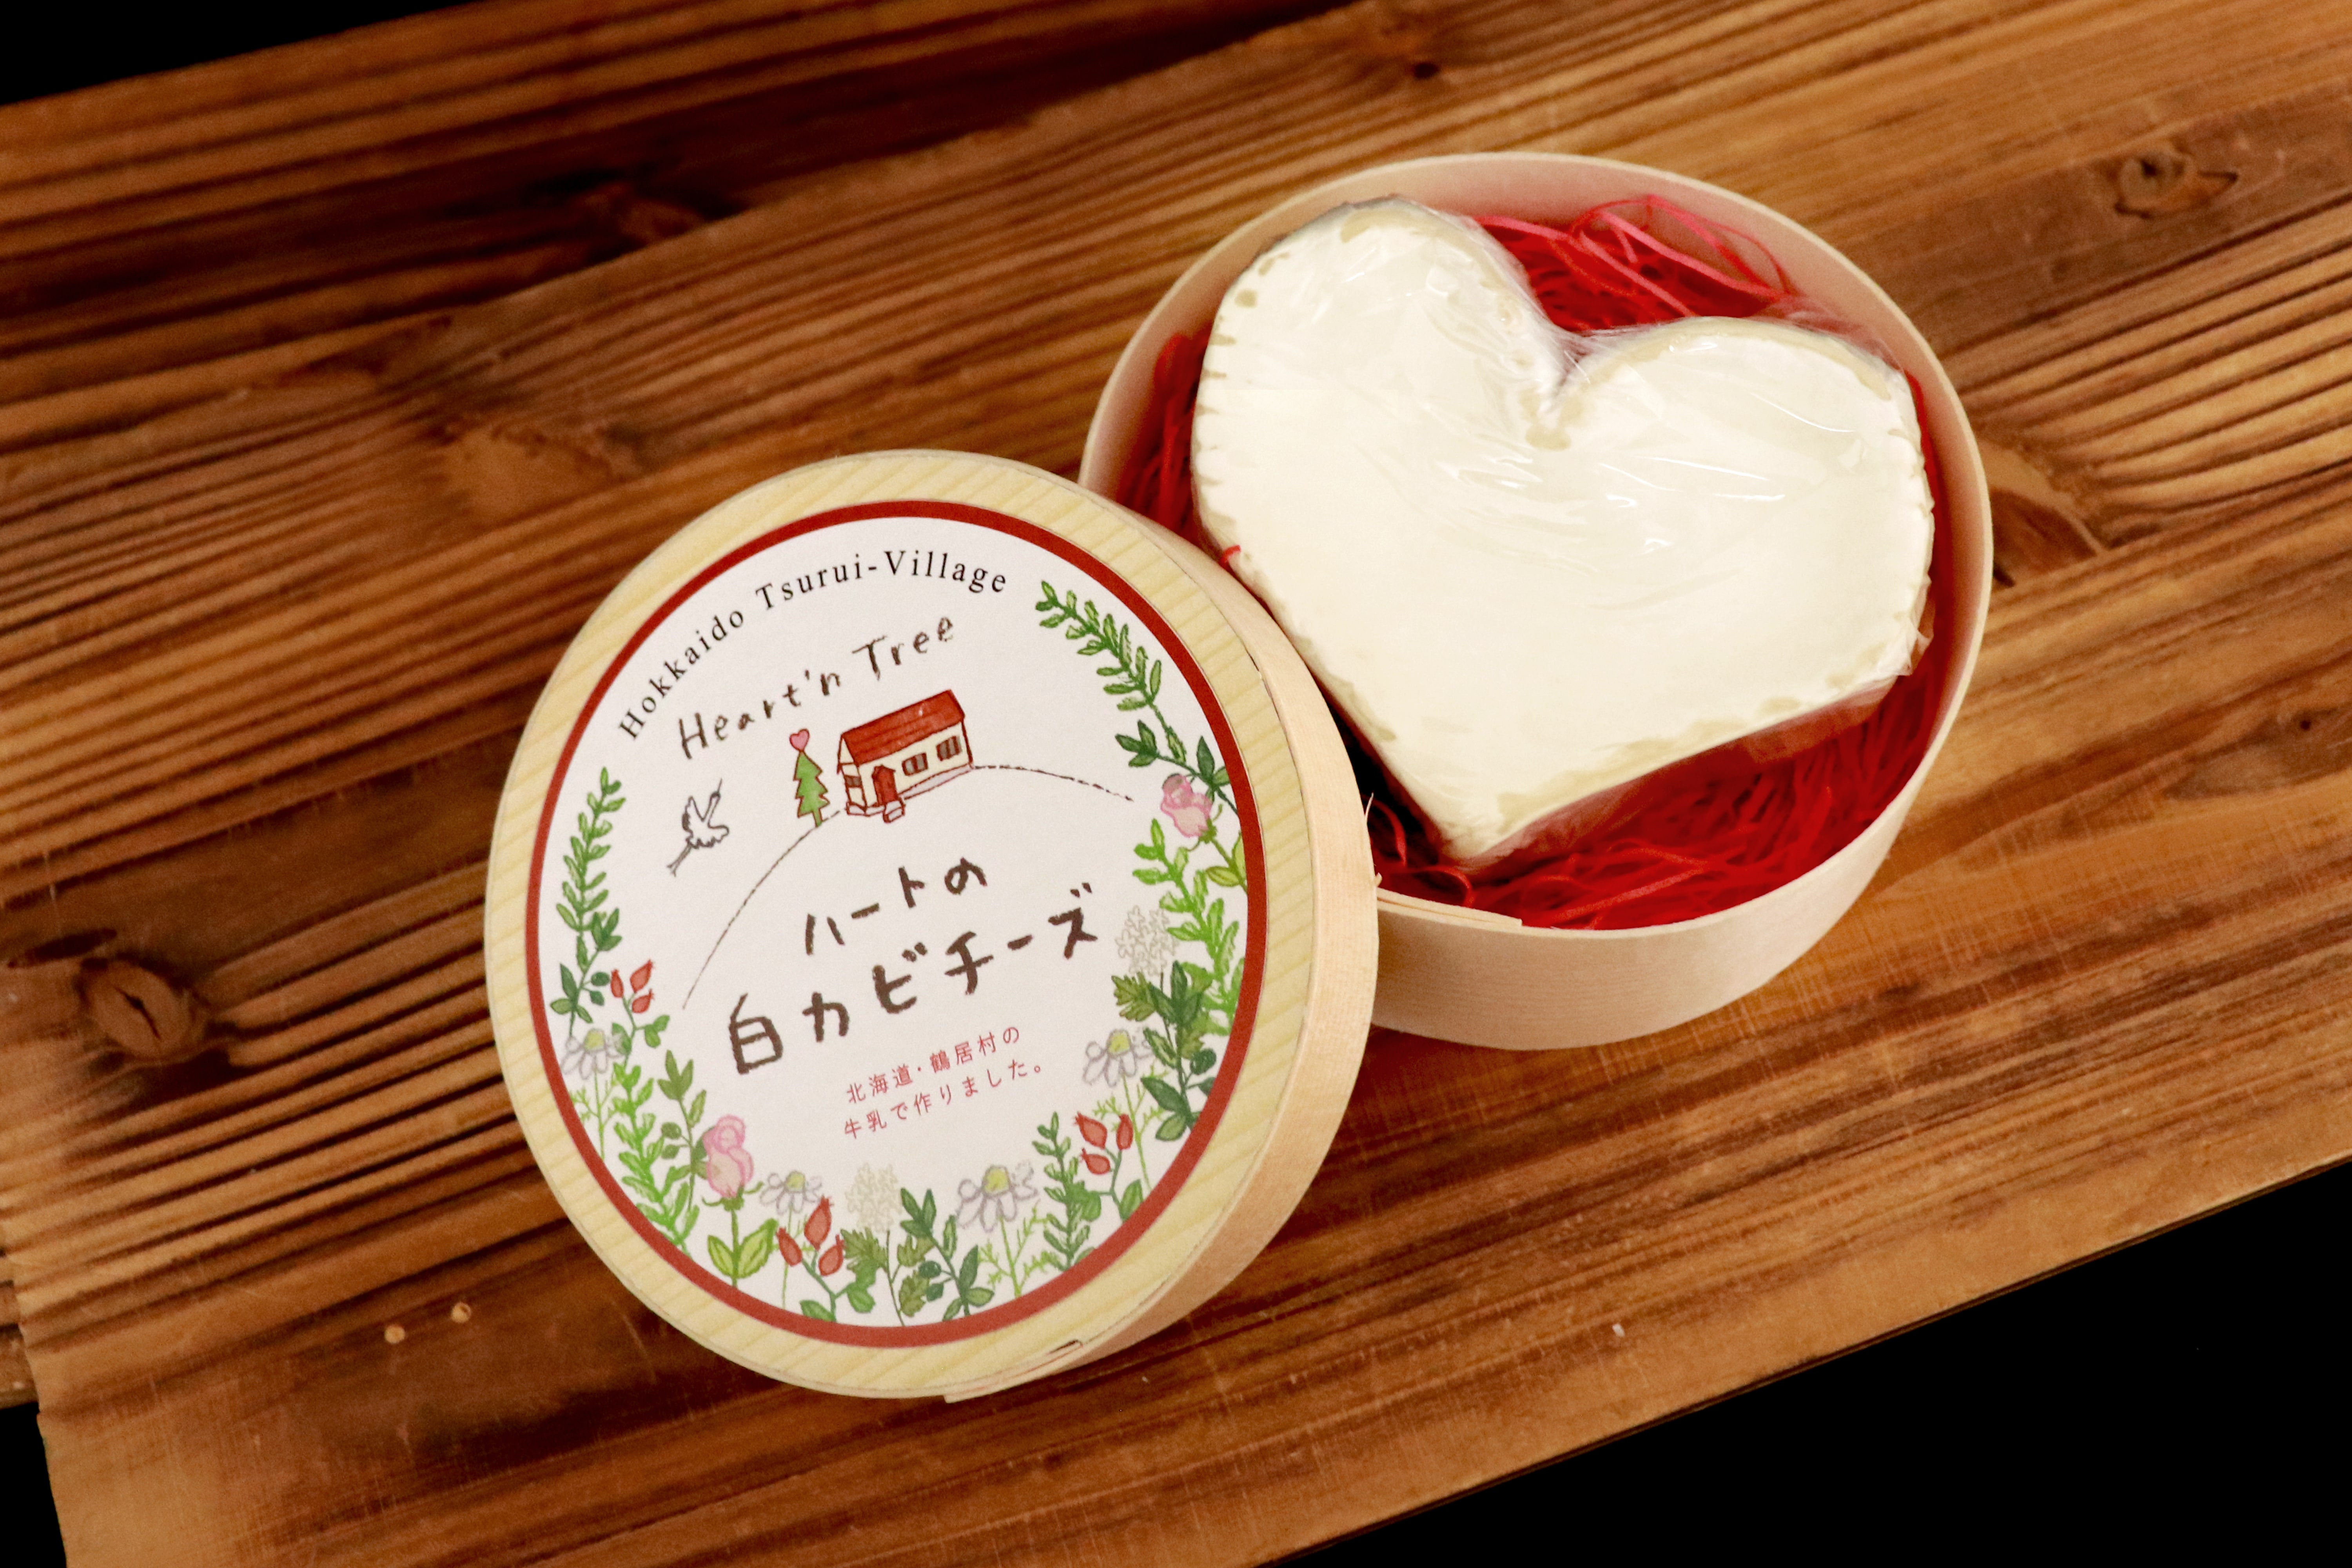 北海道鶴居村ハートンツリーのカマンベール「ハートの白カビチーズ」